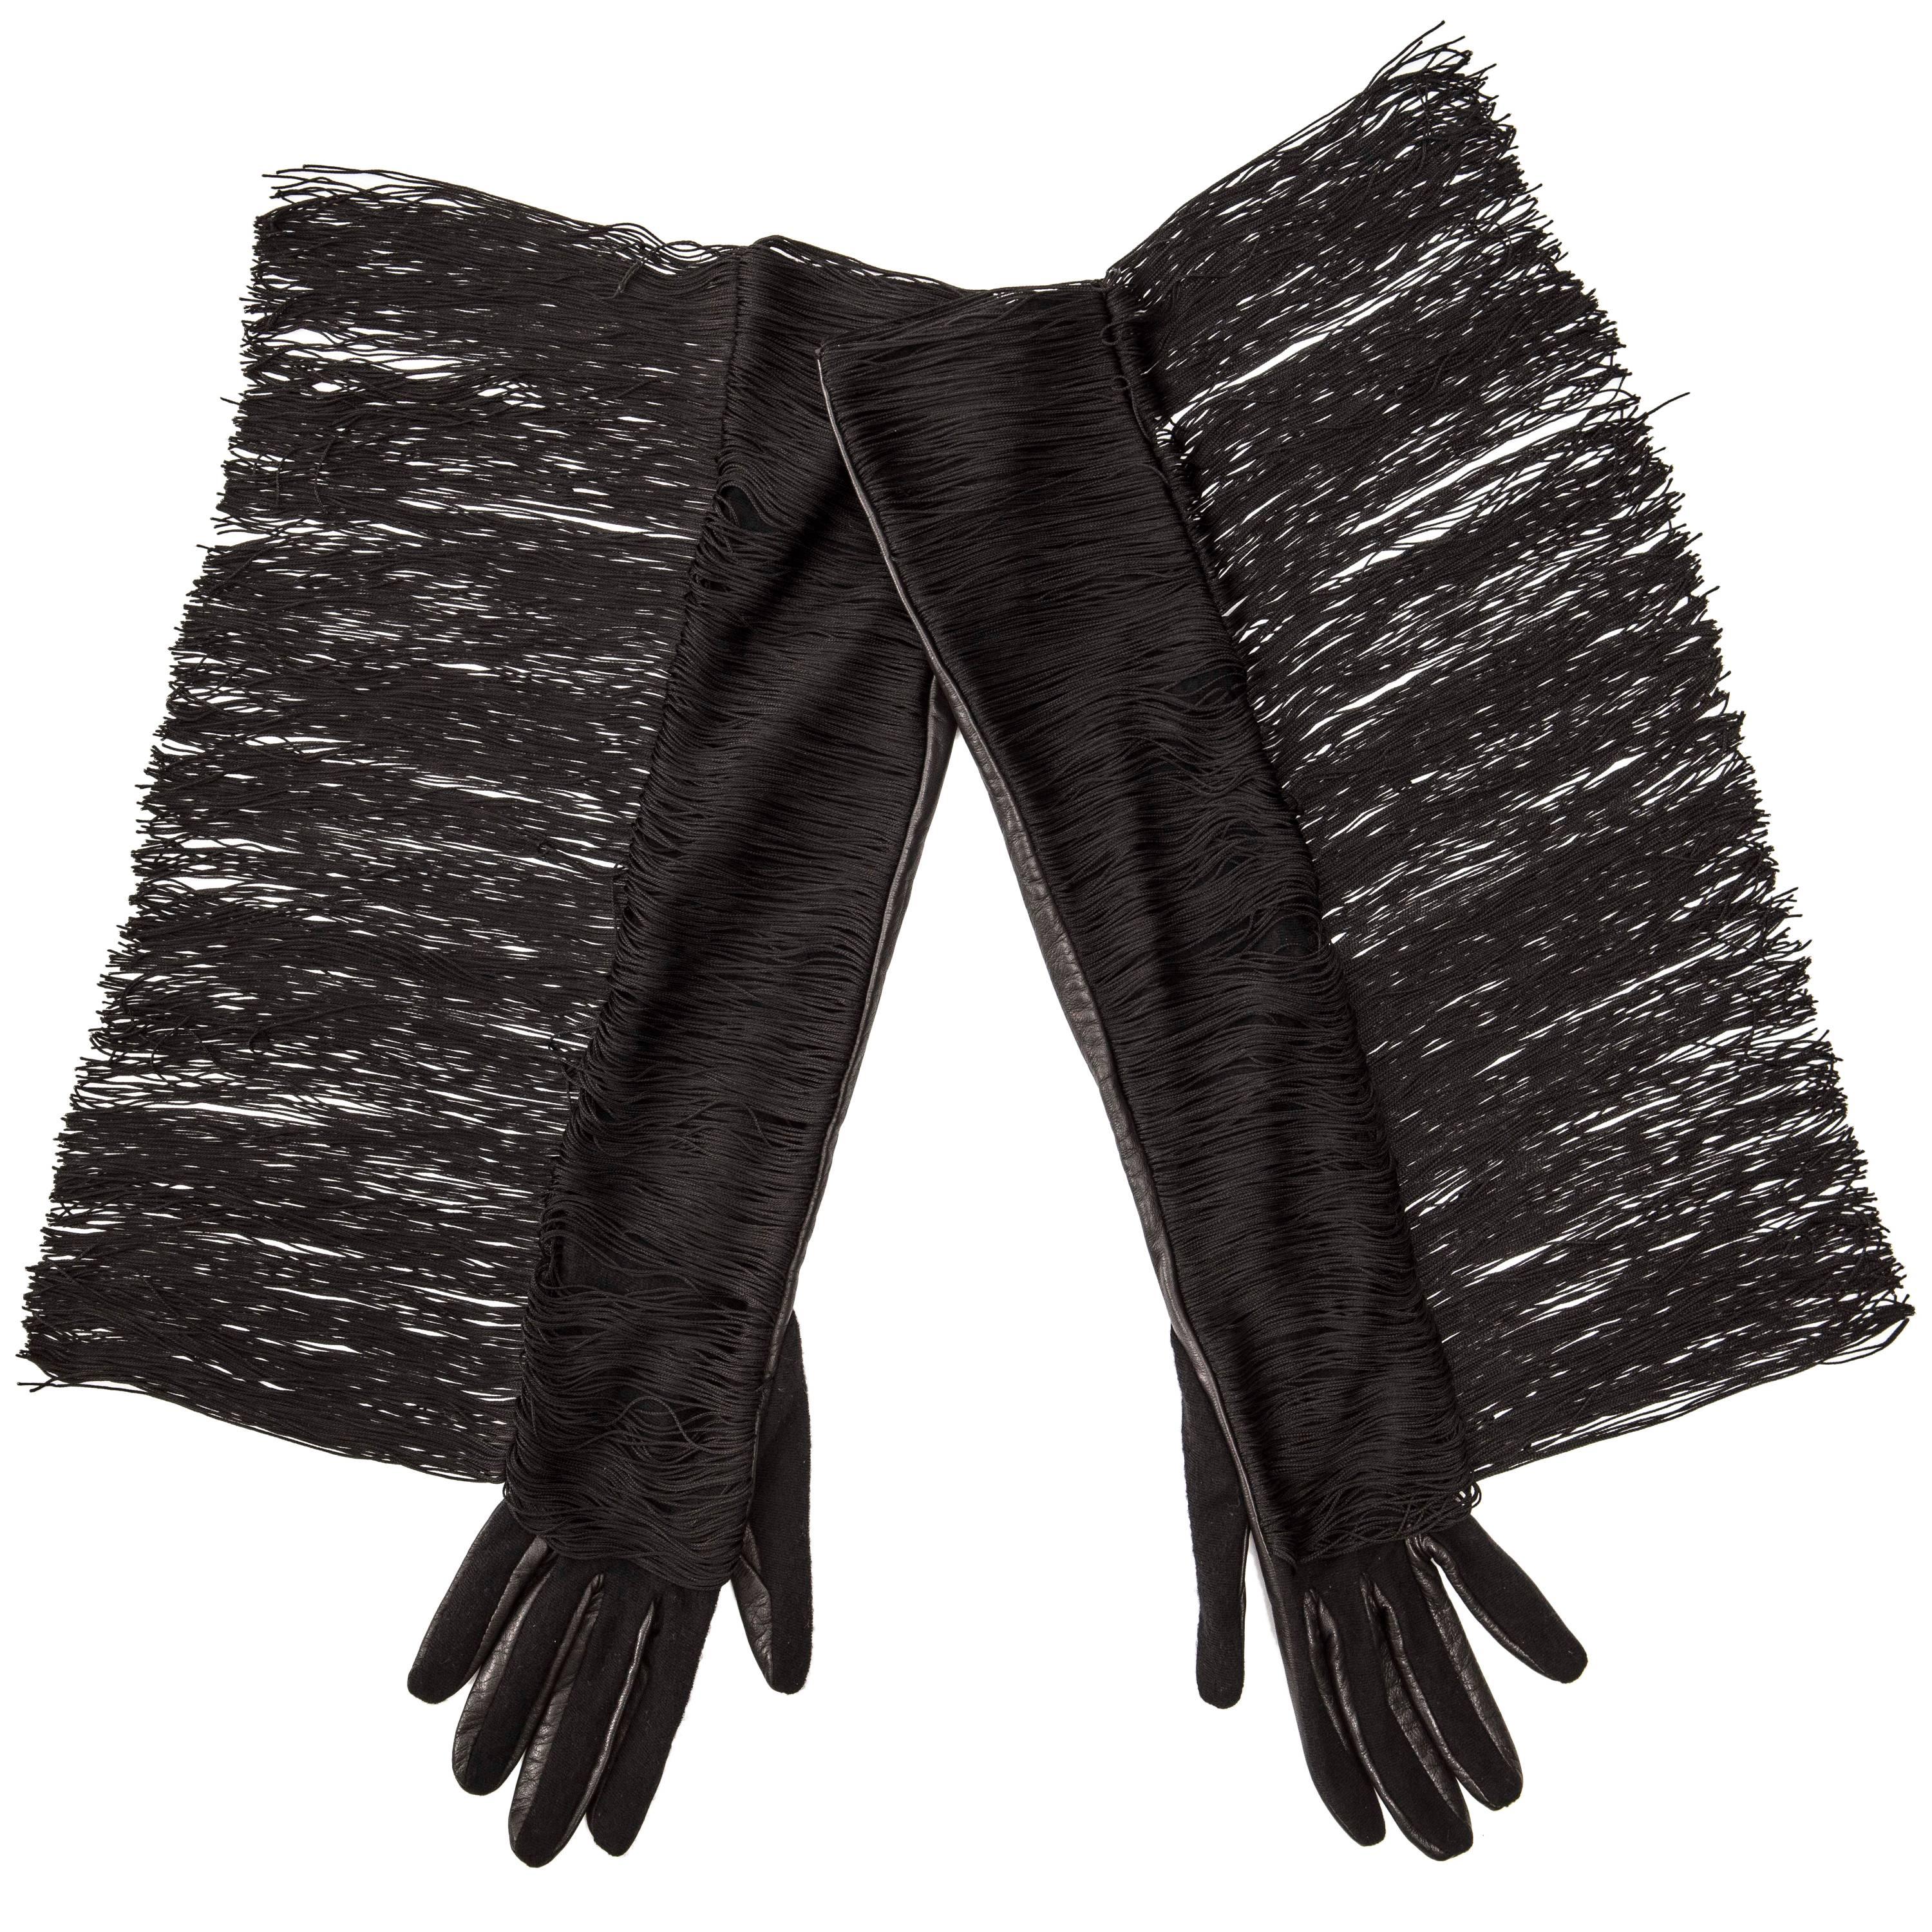 Alber Elbaz for Lanvin Long Black Leather Fringe Gloves, Fall 2014